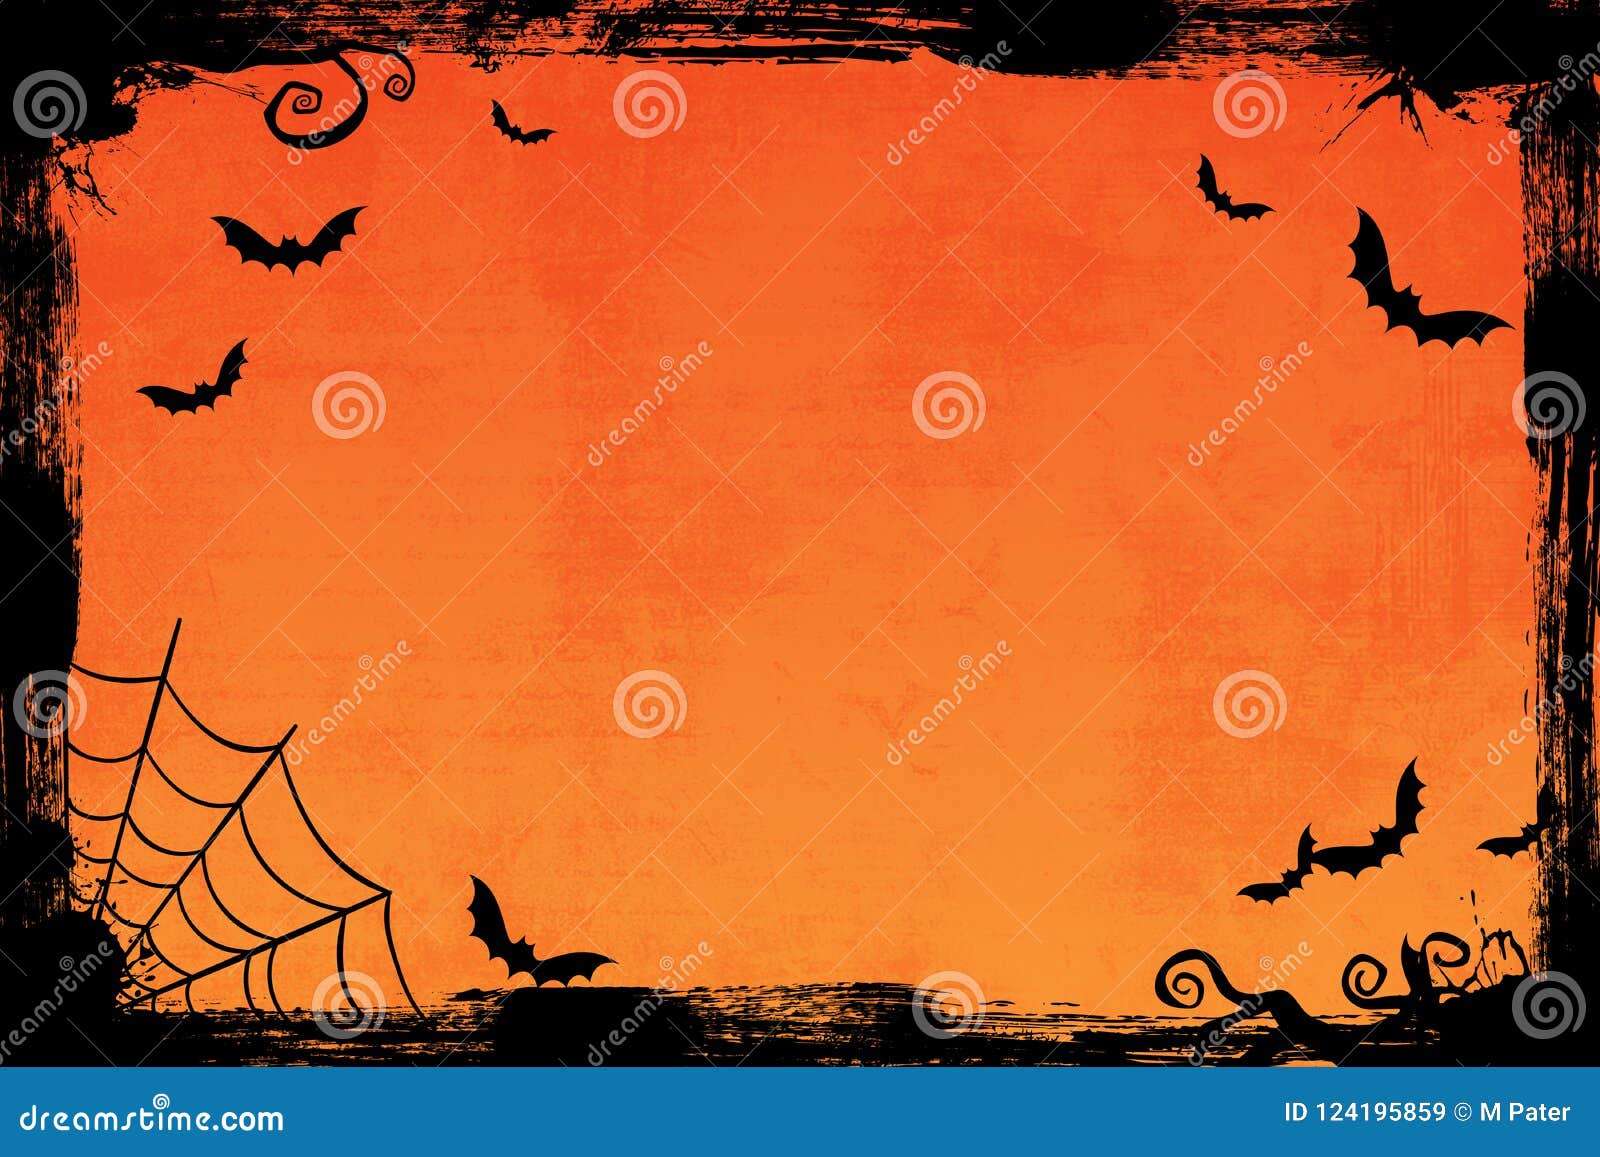 Hãy chào đón đêm Halloween bằng một bức hình nền có màu cam grunge đầy ma mị và đầy bí hiểm. Hình ảnh này với những con dơi bí ẩn sẽ khiến bất kỳ ai cũng muốn tham gia vào khoảng thời gian đáng sợ nhất trong năm.